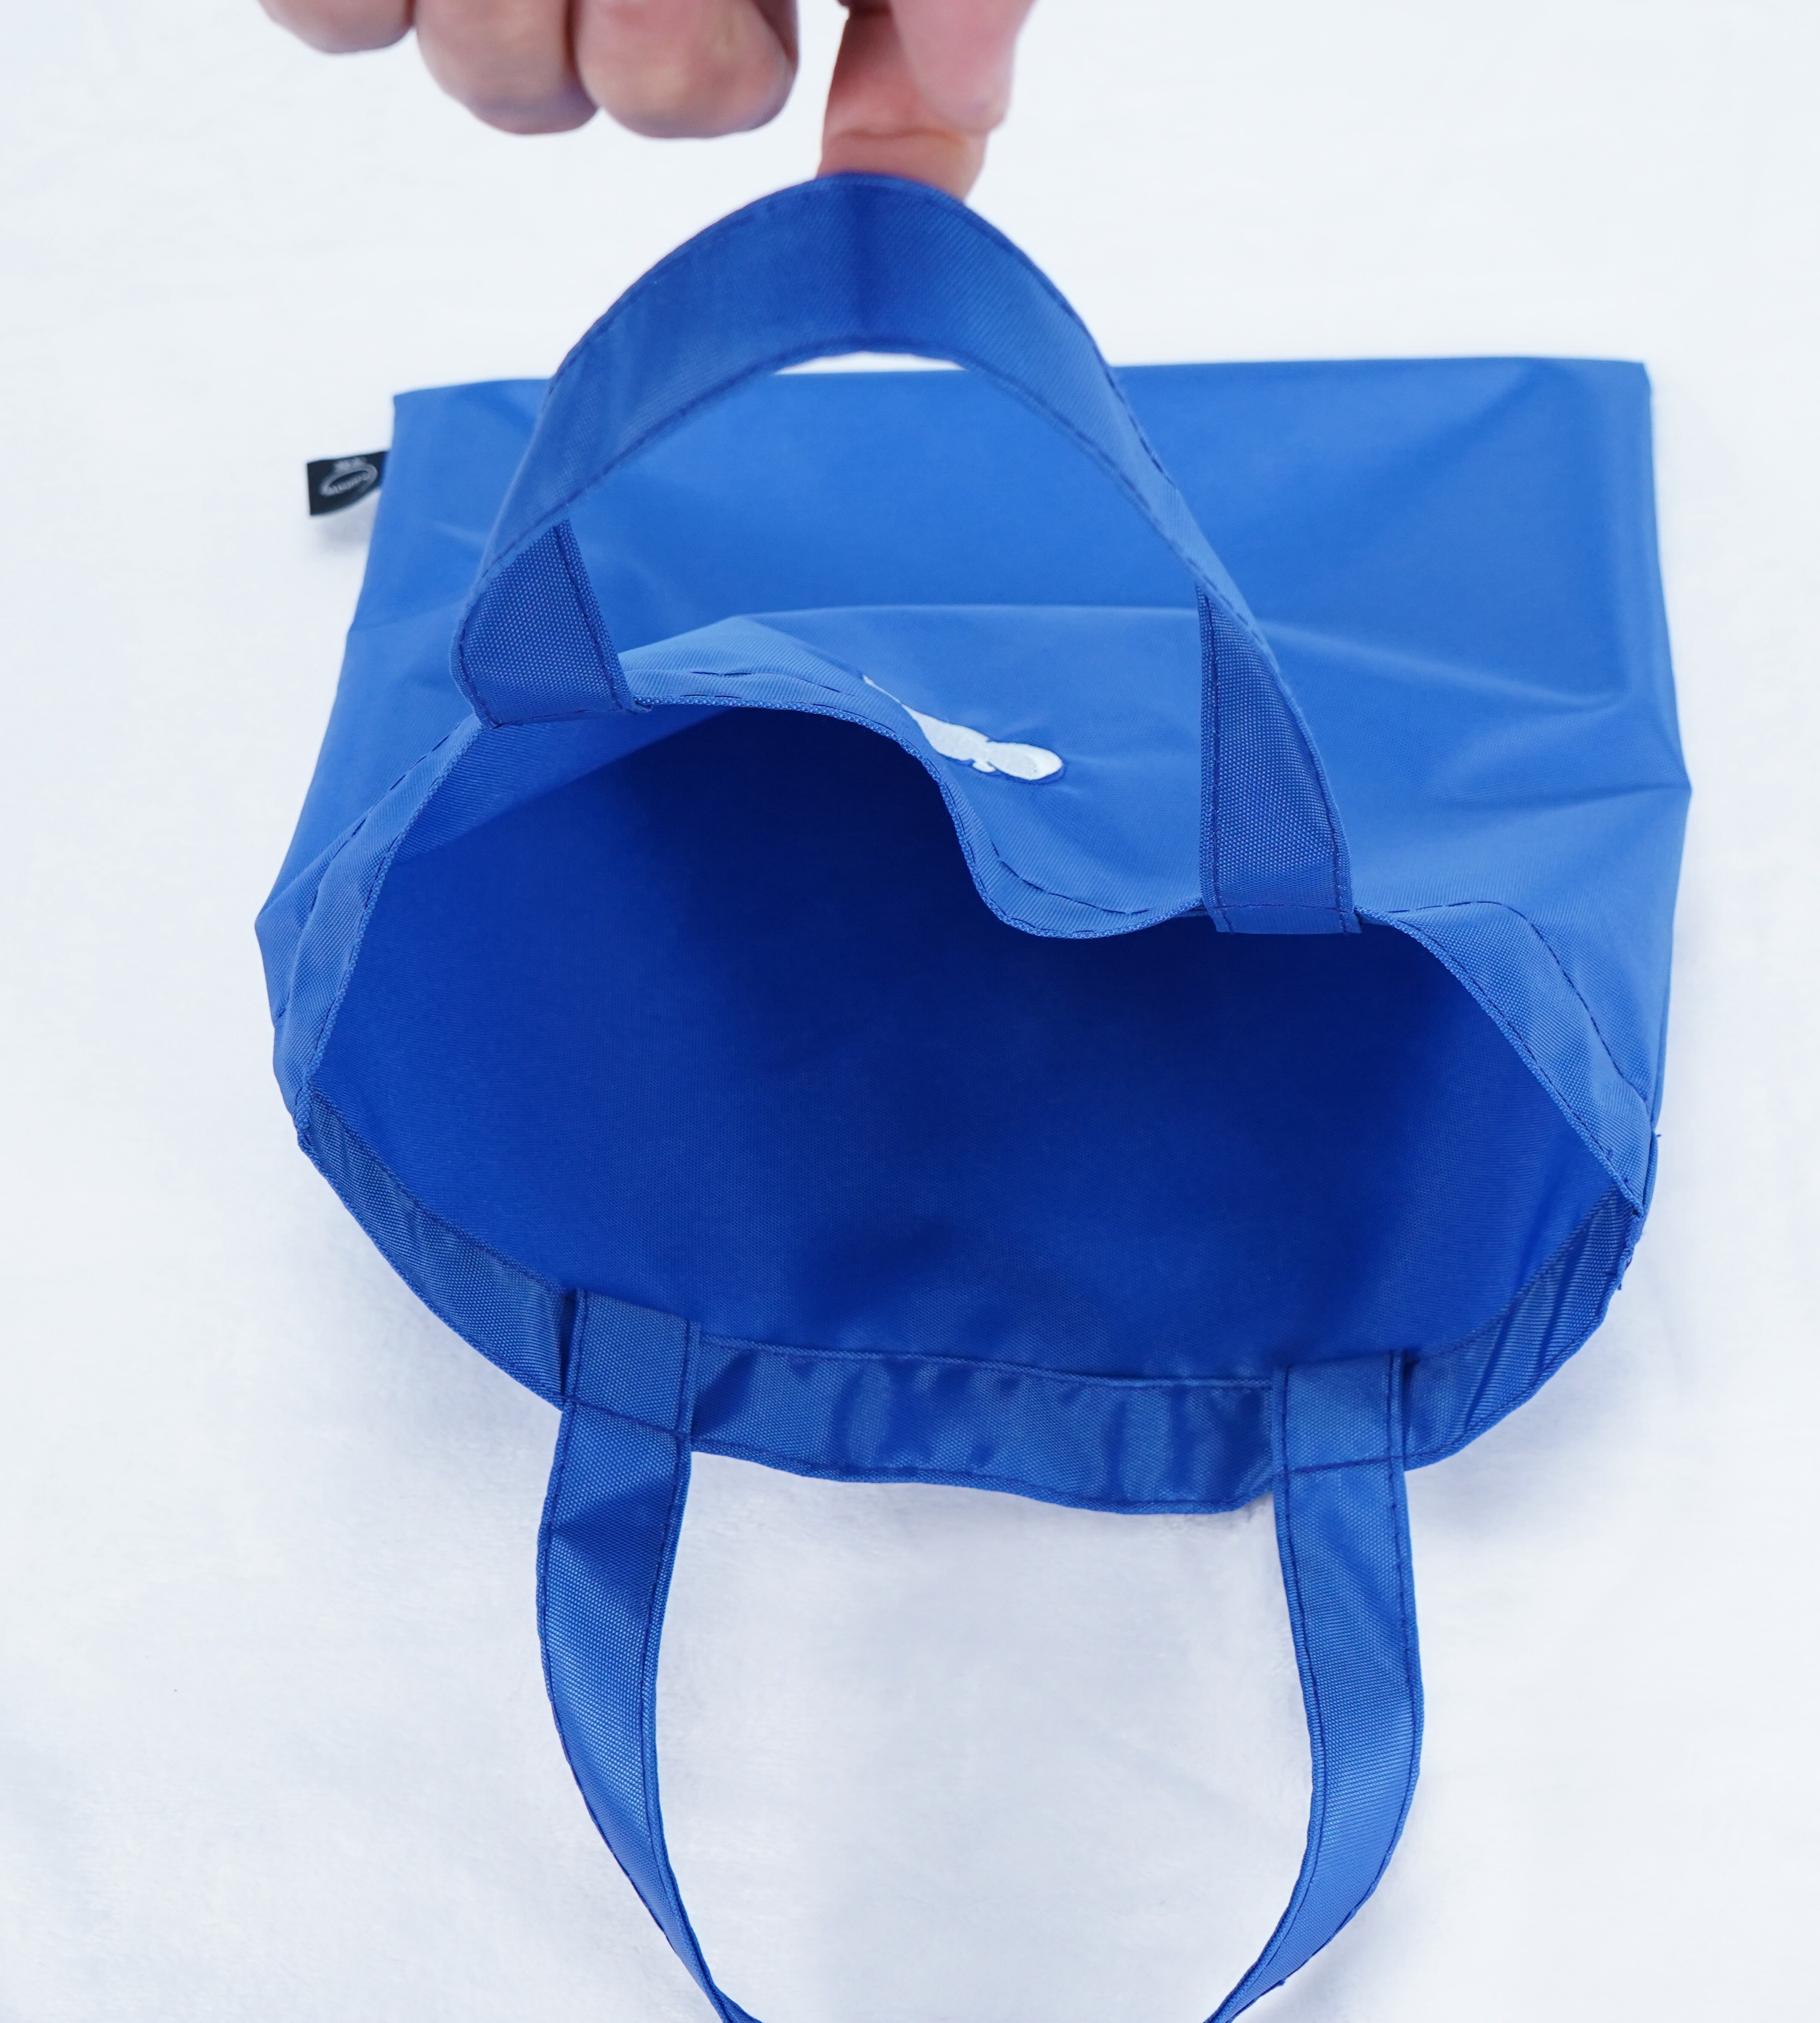 Легкий и прочный: откройте для себя универсальность нейлоновых сумок из полиэстера